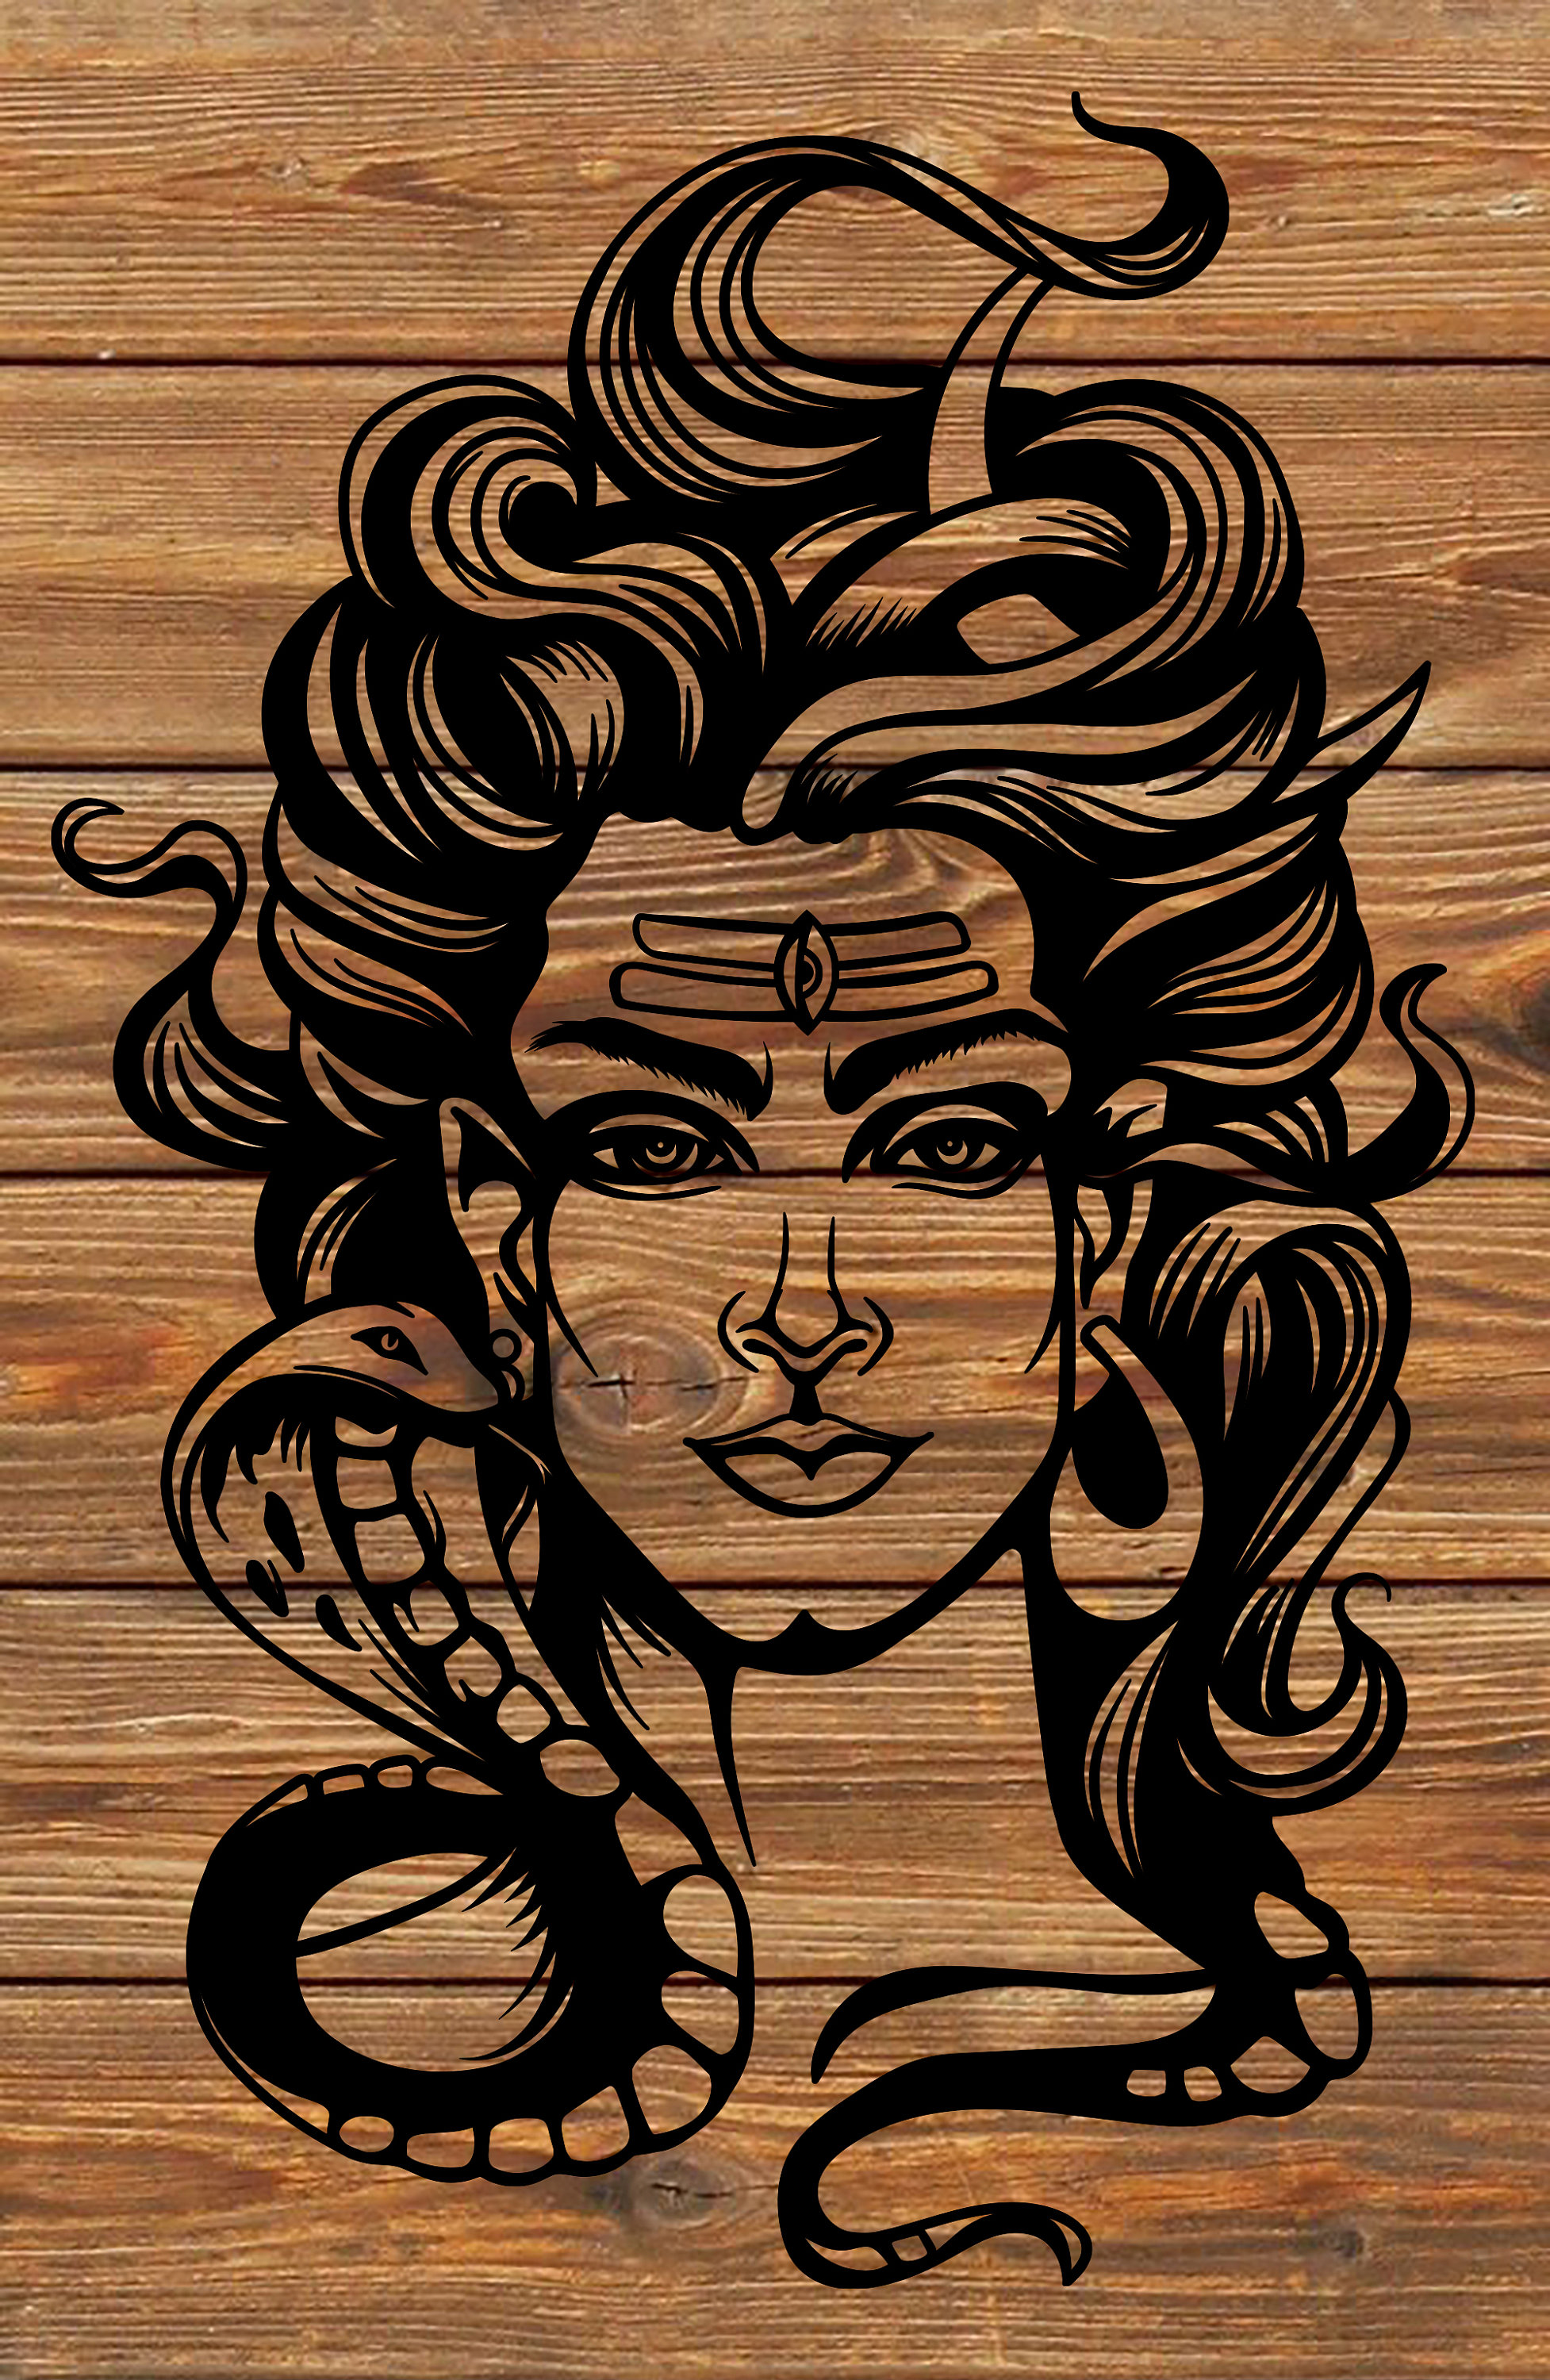 Voorkoms Temporary Tattoo Waterproof For Girls Men Women Beautiful   Popular Water Transfer 3D Lord Shiva Eye Trishul Snake Size 105 CM x 6CM   1PC  Amazonin Beauty